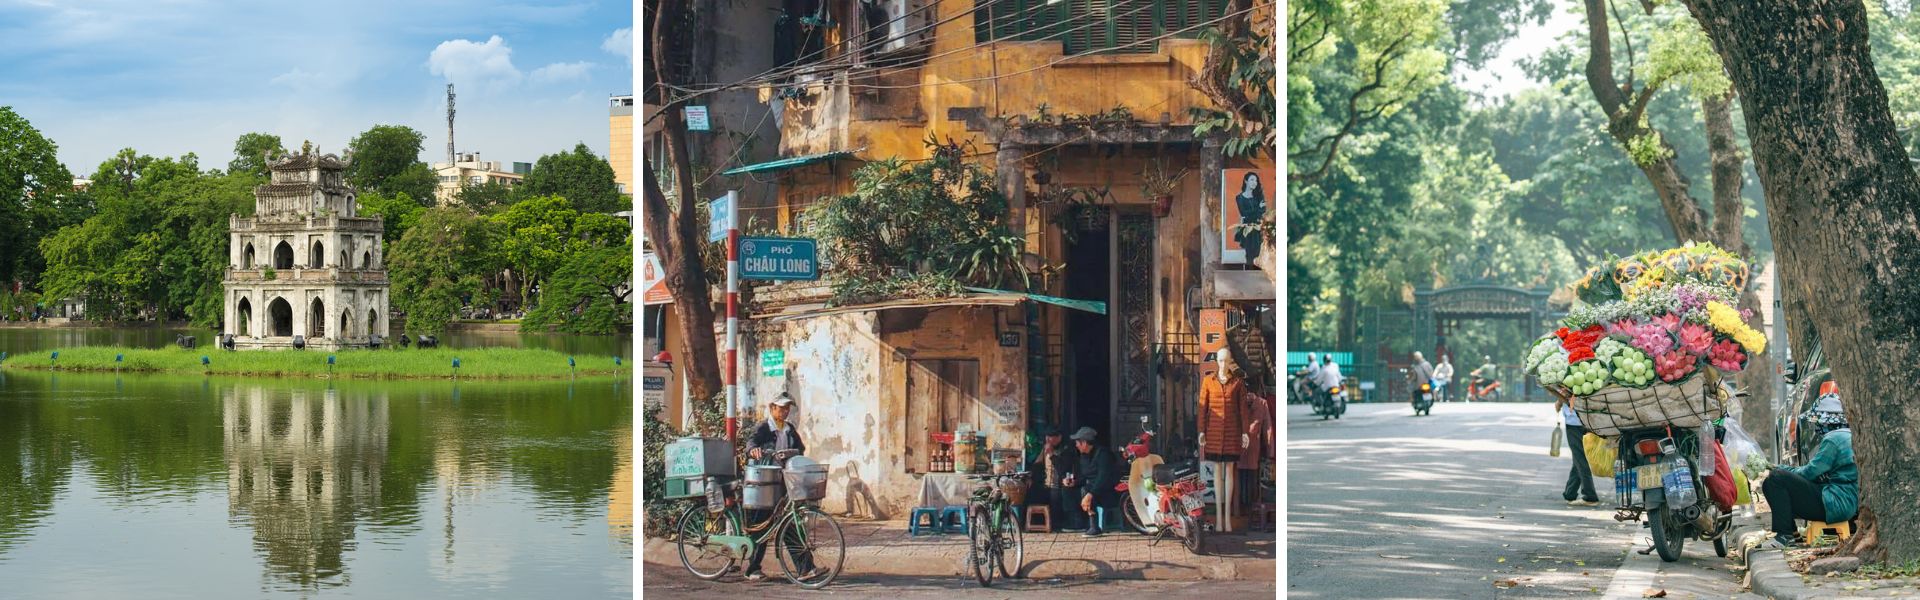 Hanoi Sehenswürdigkeiten und Reisetipps | Vietnam Reisen